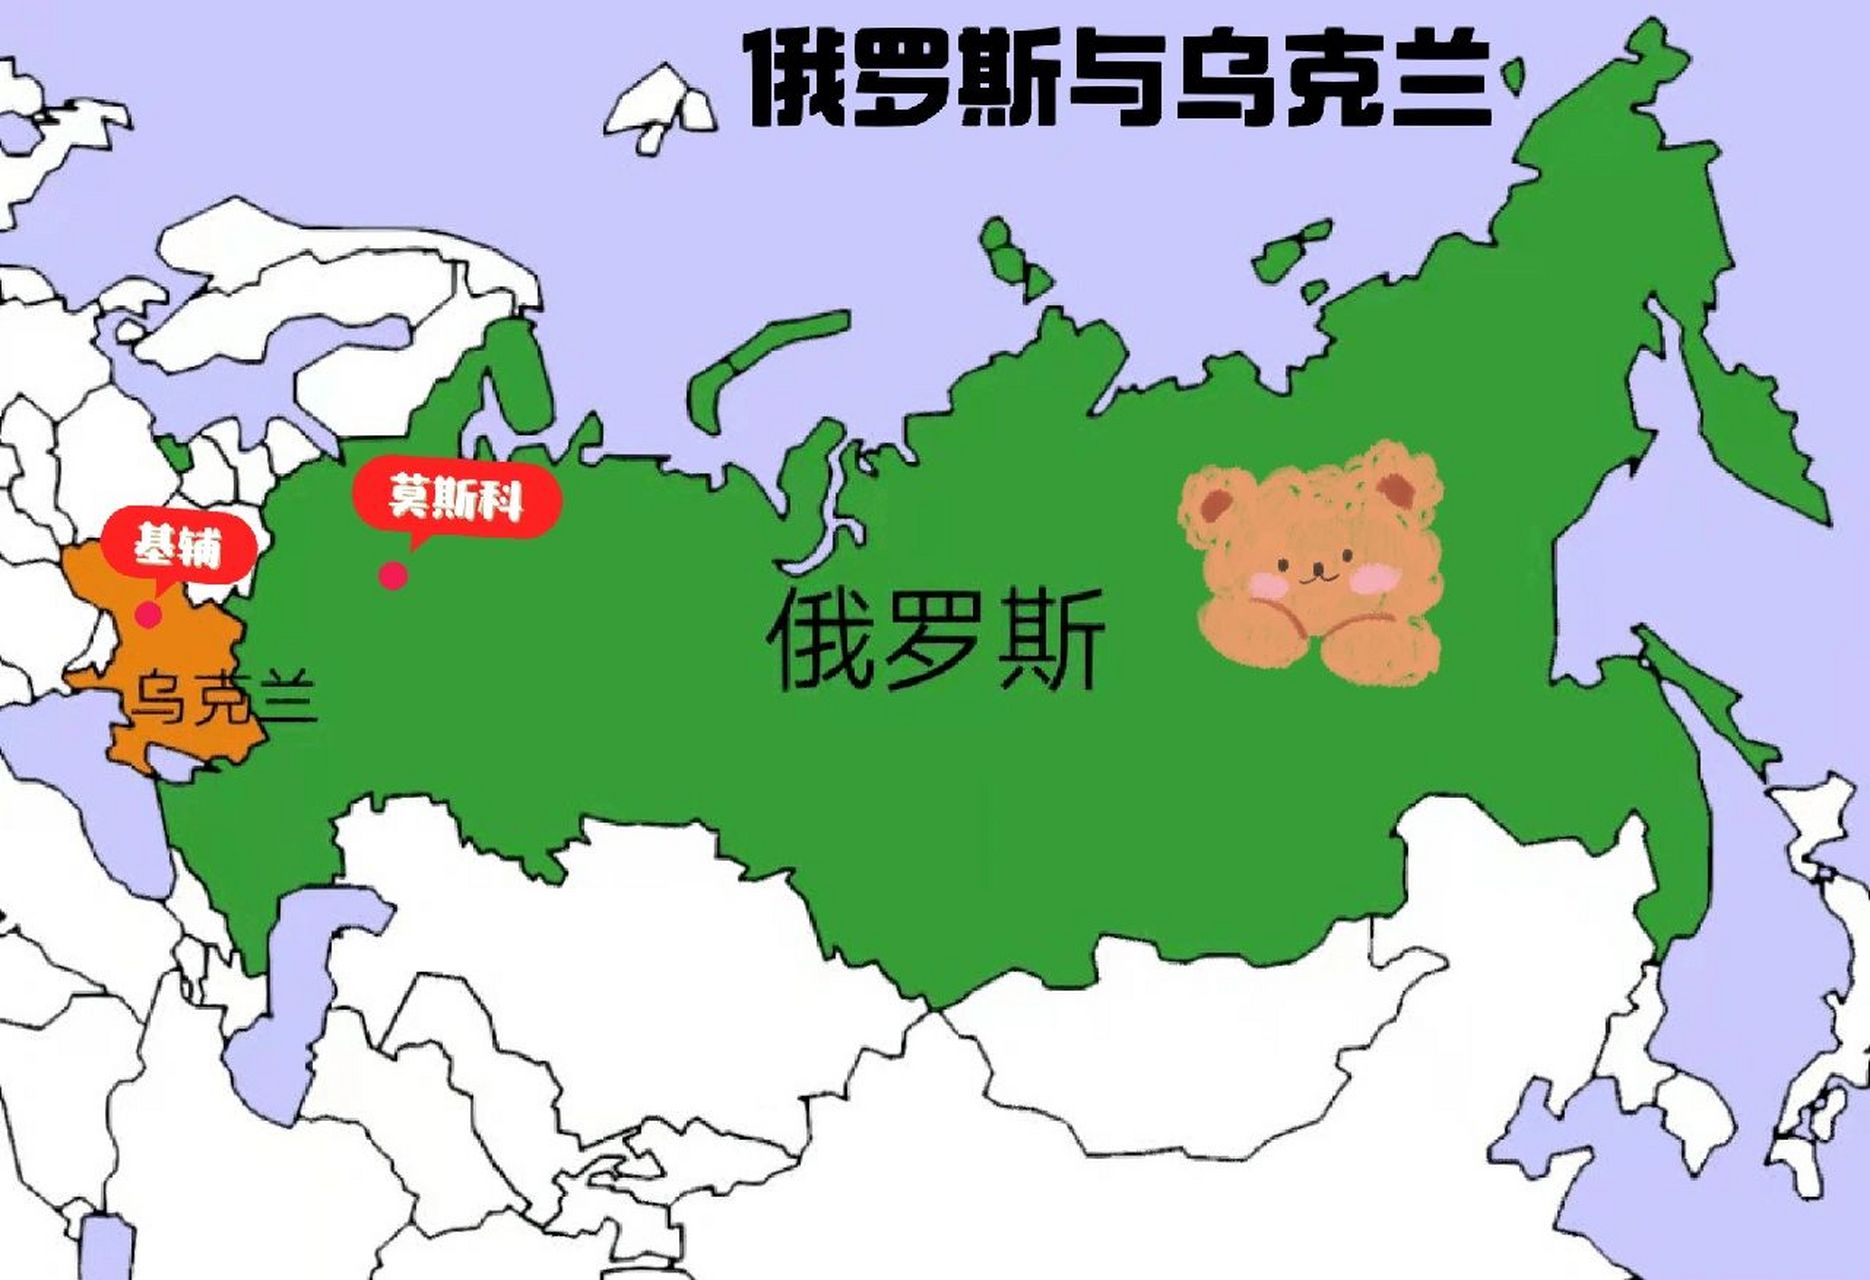 俄罗斯接壤国家地图图片